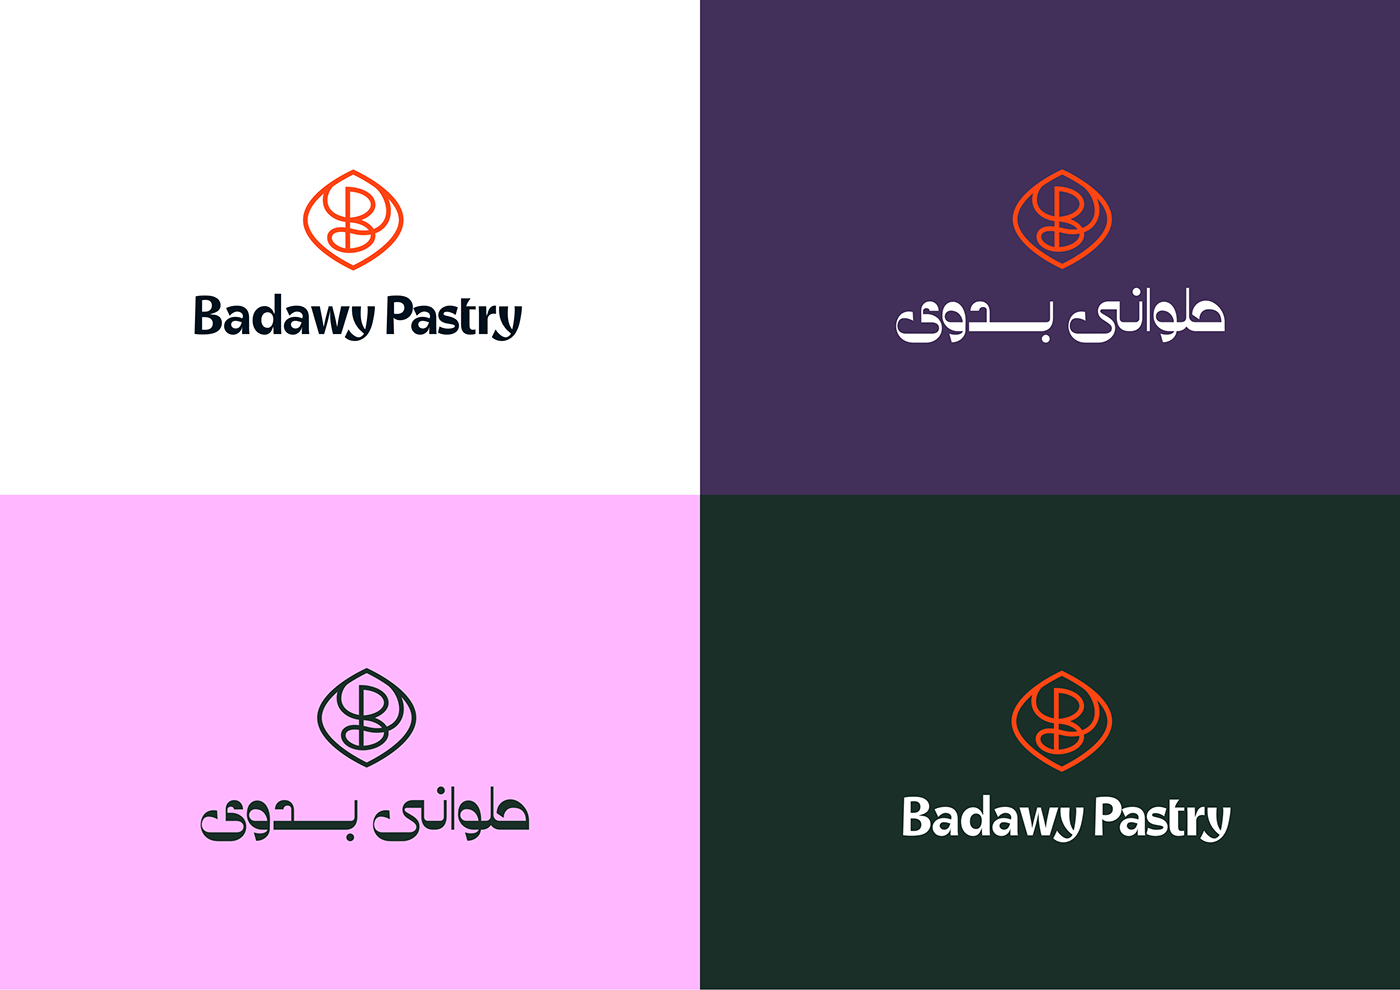 Badawy branding  logo oriental pastry Sweets western